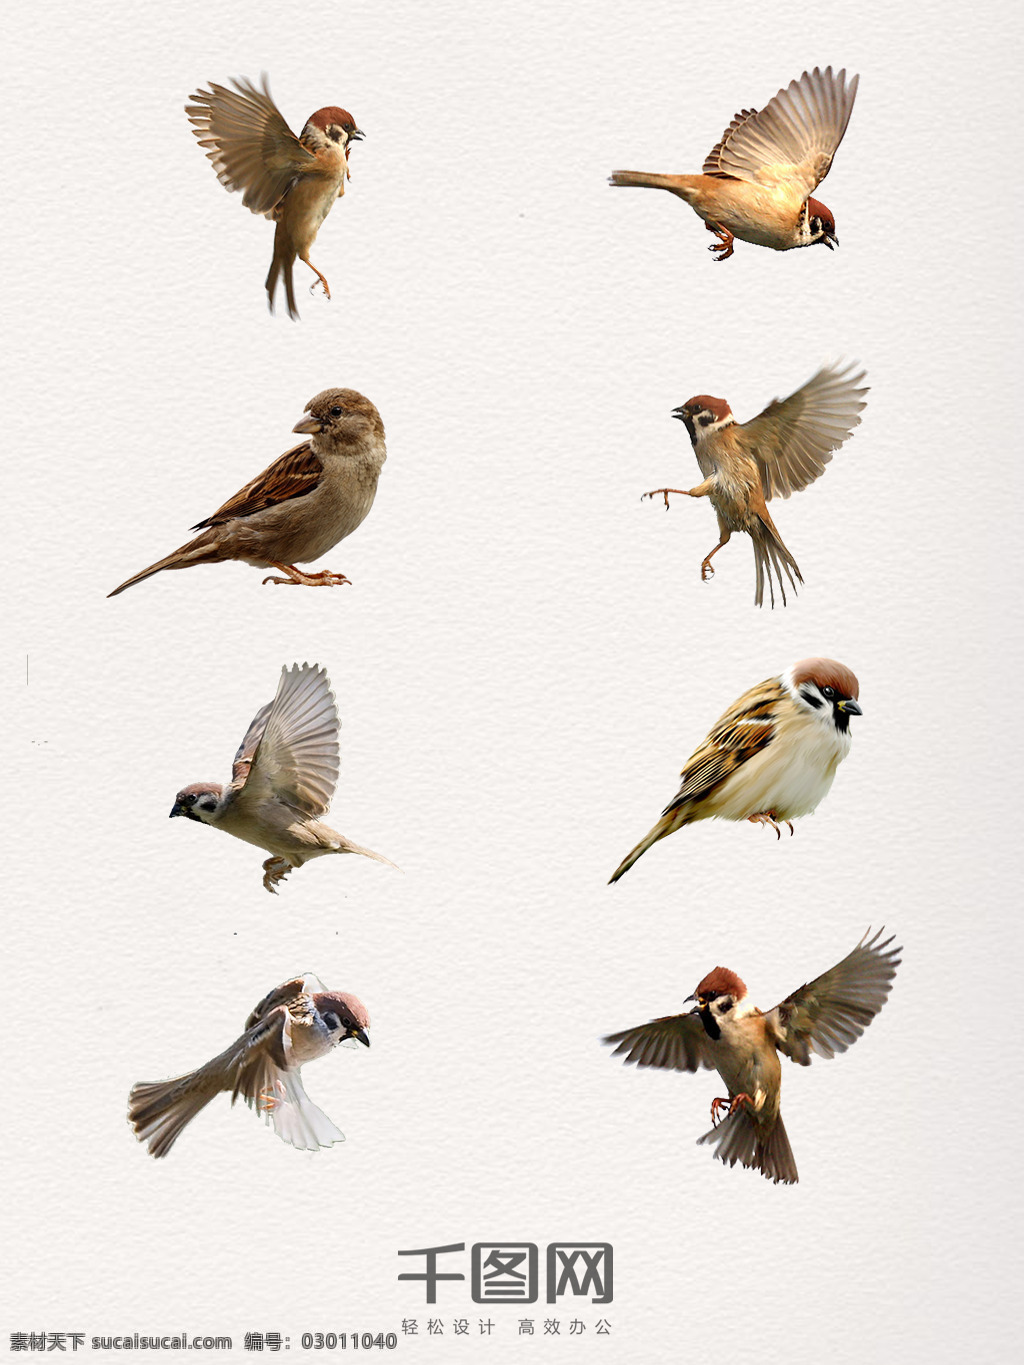 组 清晰 麻雀 实物 动物 鸟类 飞翔 动物世界 小鸟